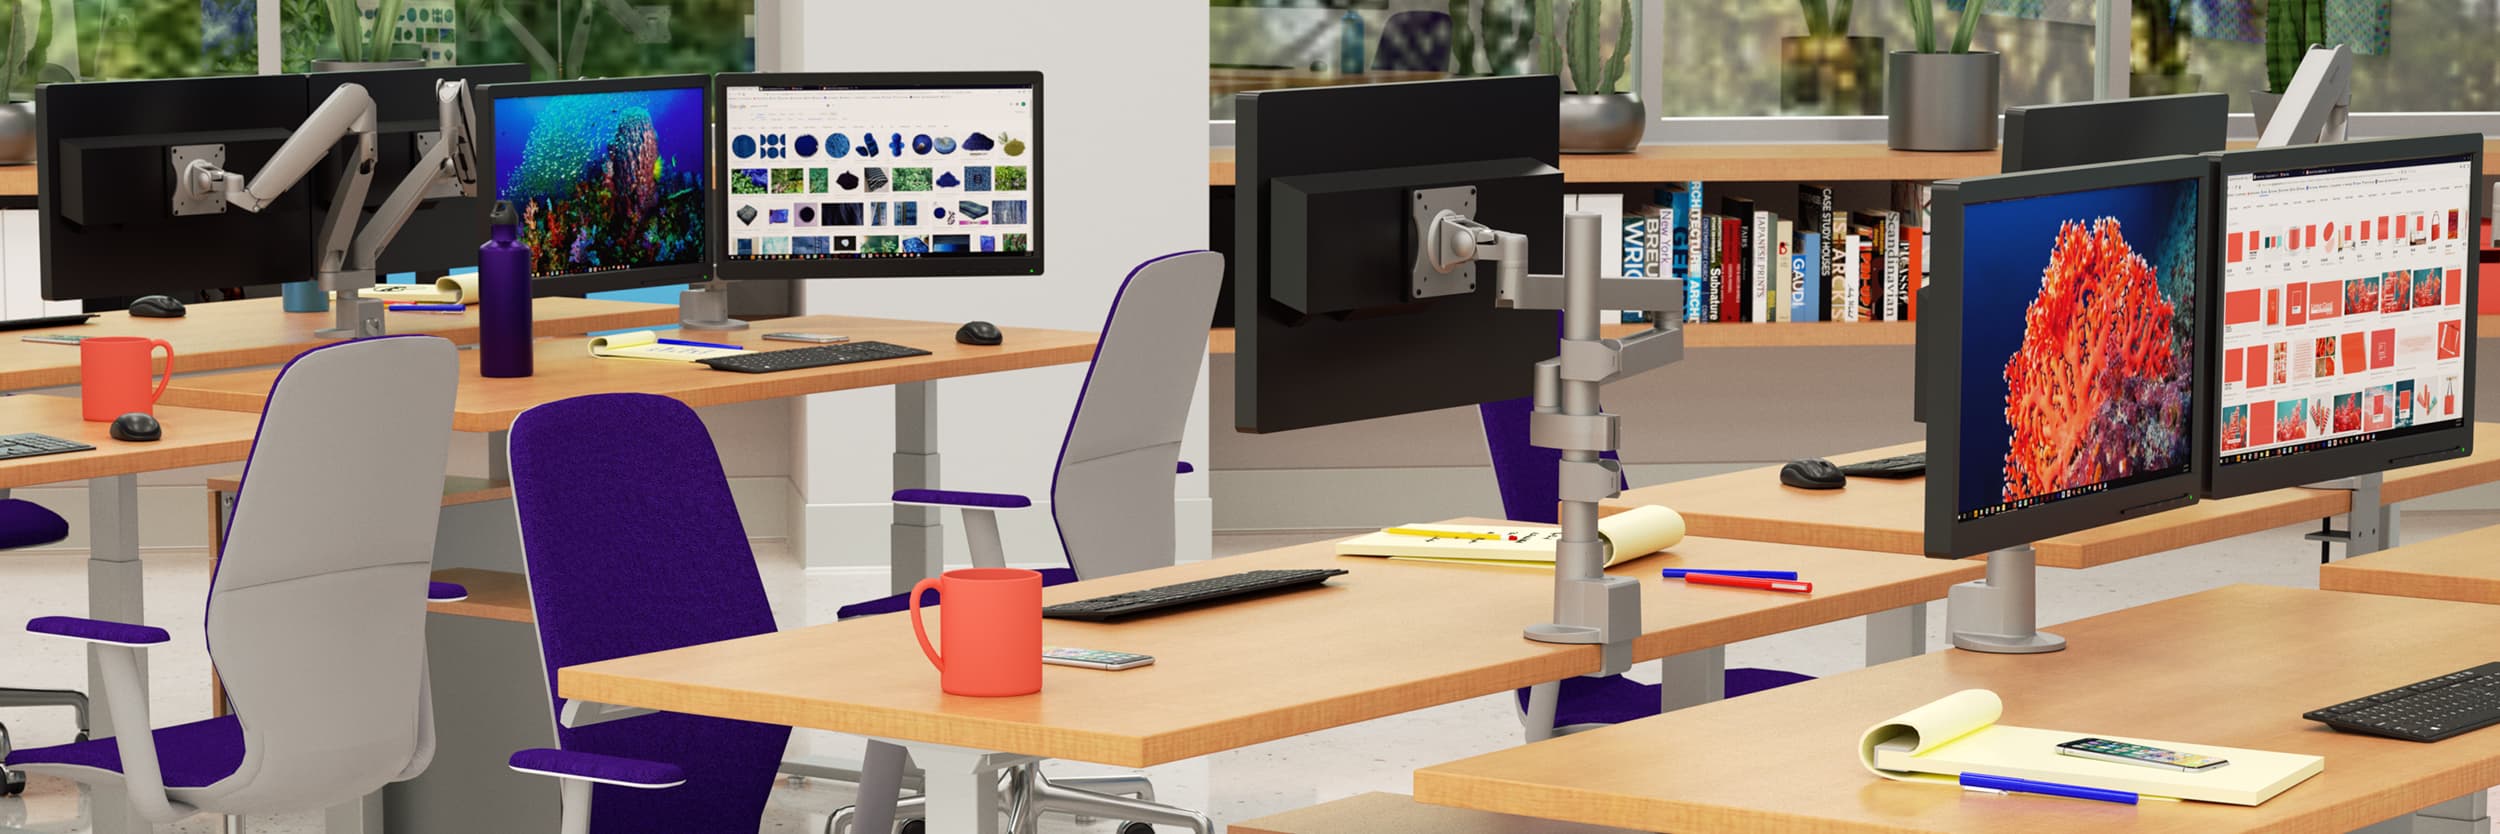 Office Desks Bolt Mounted Single Monitor Adjustable Arm for Computer Desk 